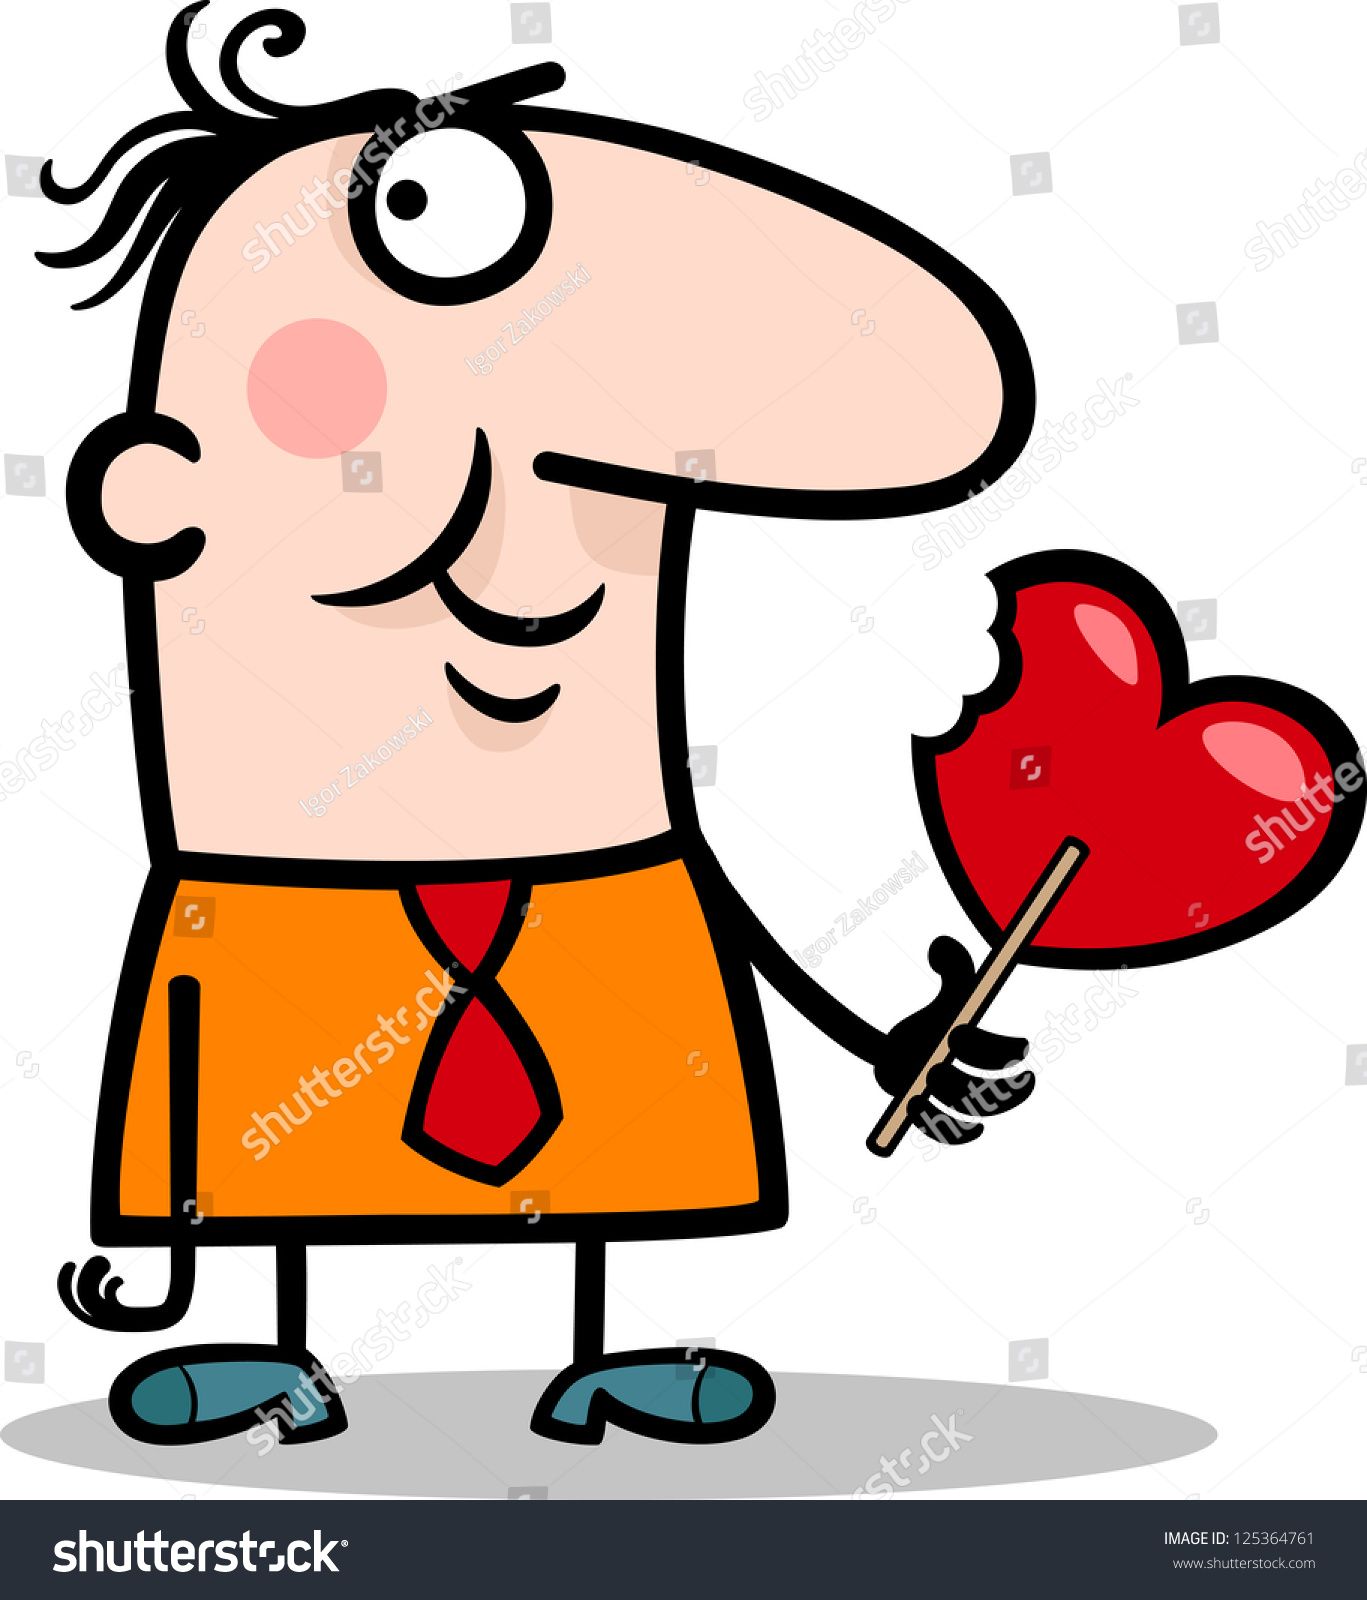 Cartoon Illustration Funny Man Valentine Heart Stock Illustration 125364761 - Shutterstock1367 x 1600